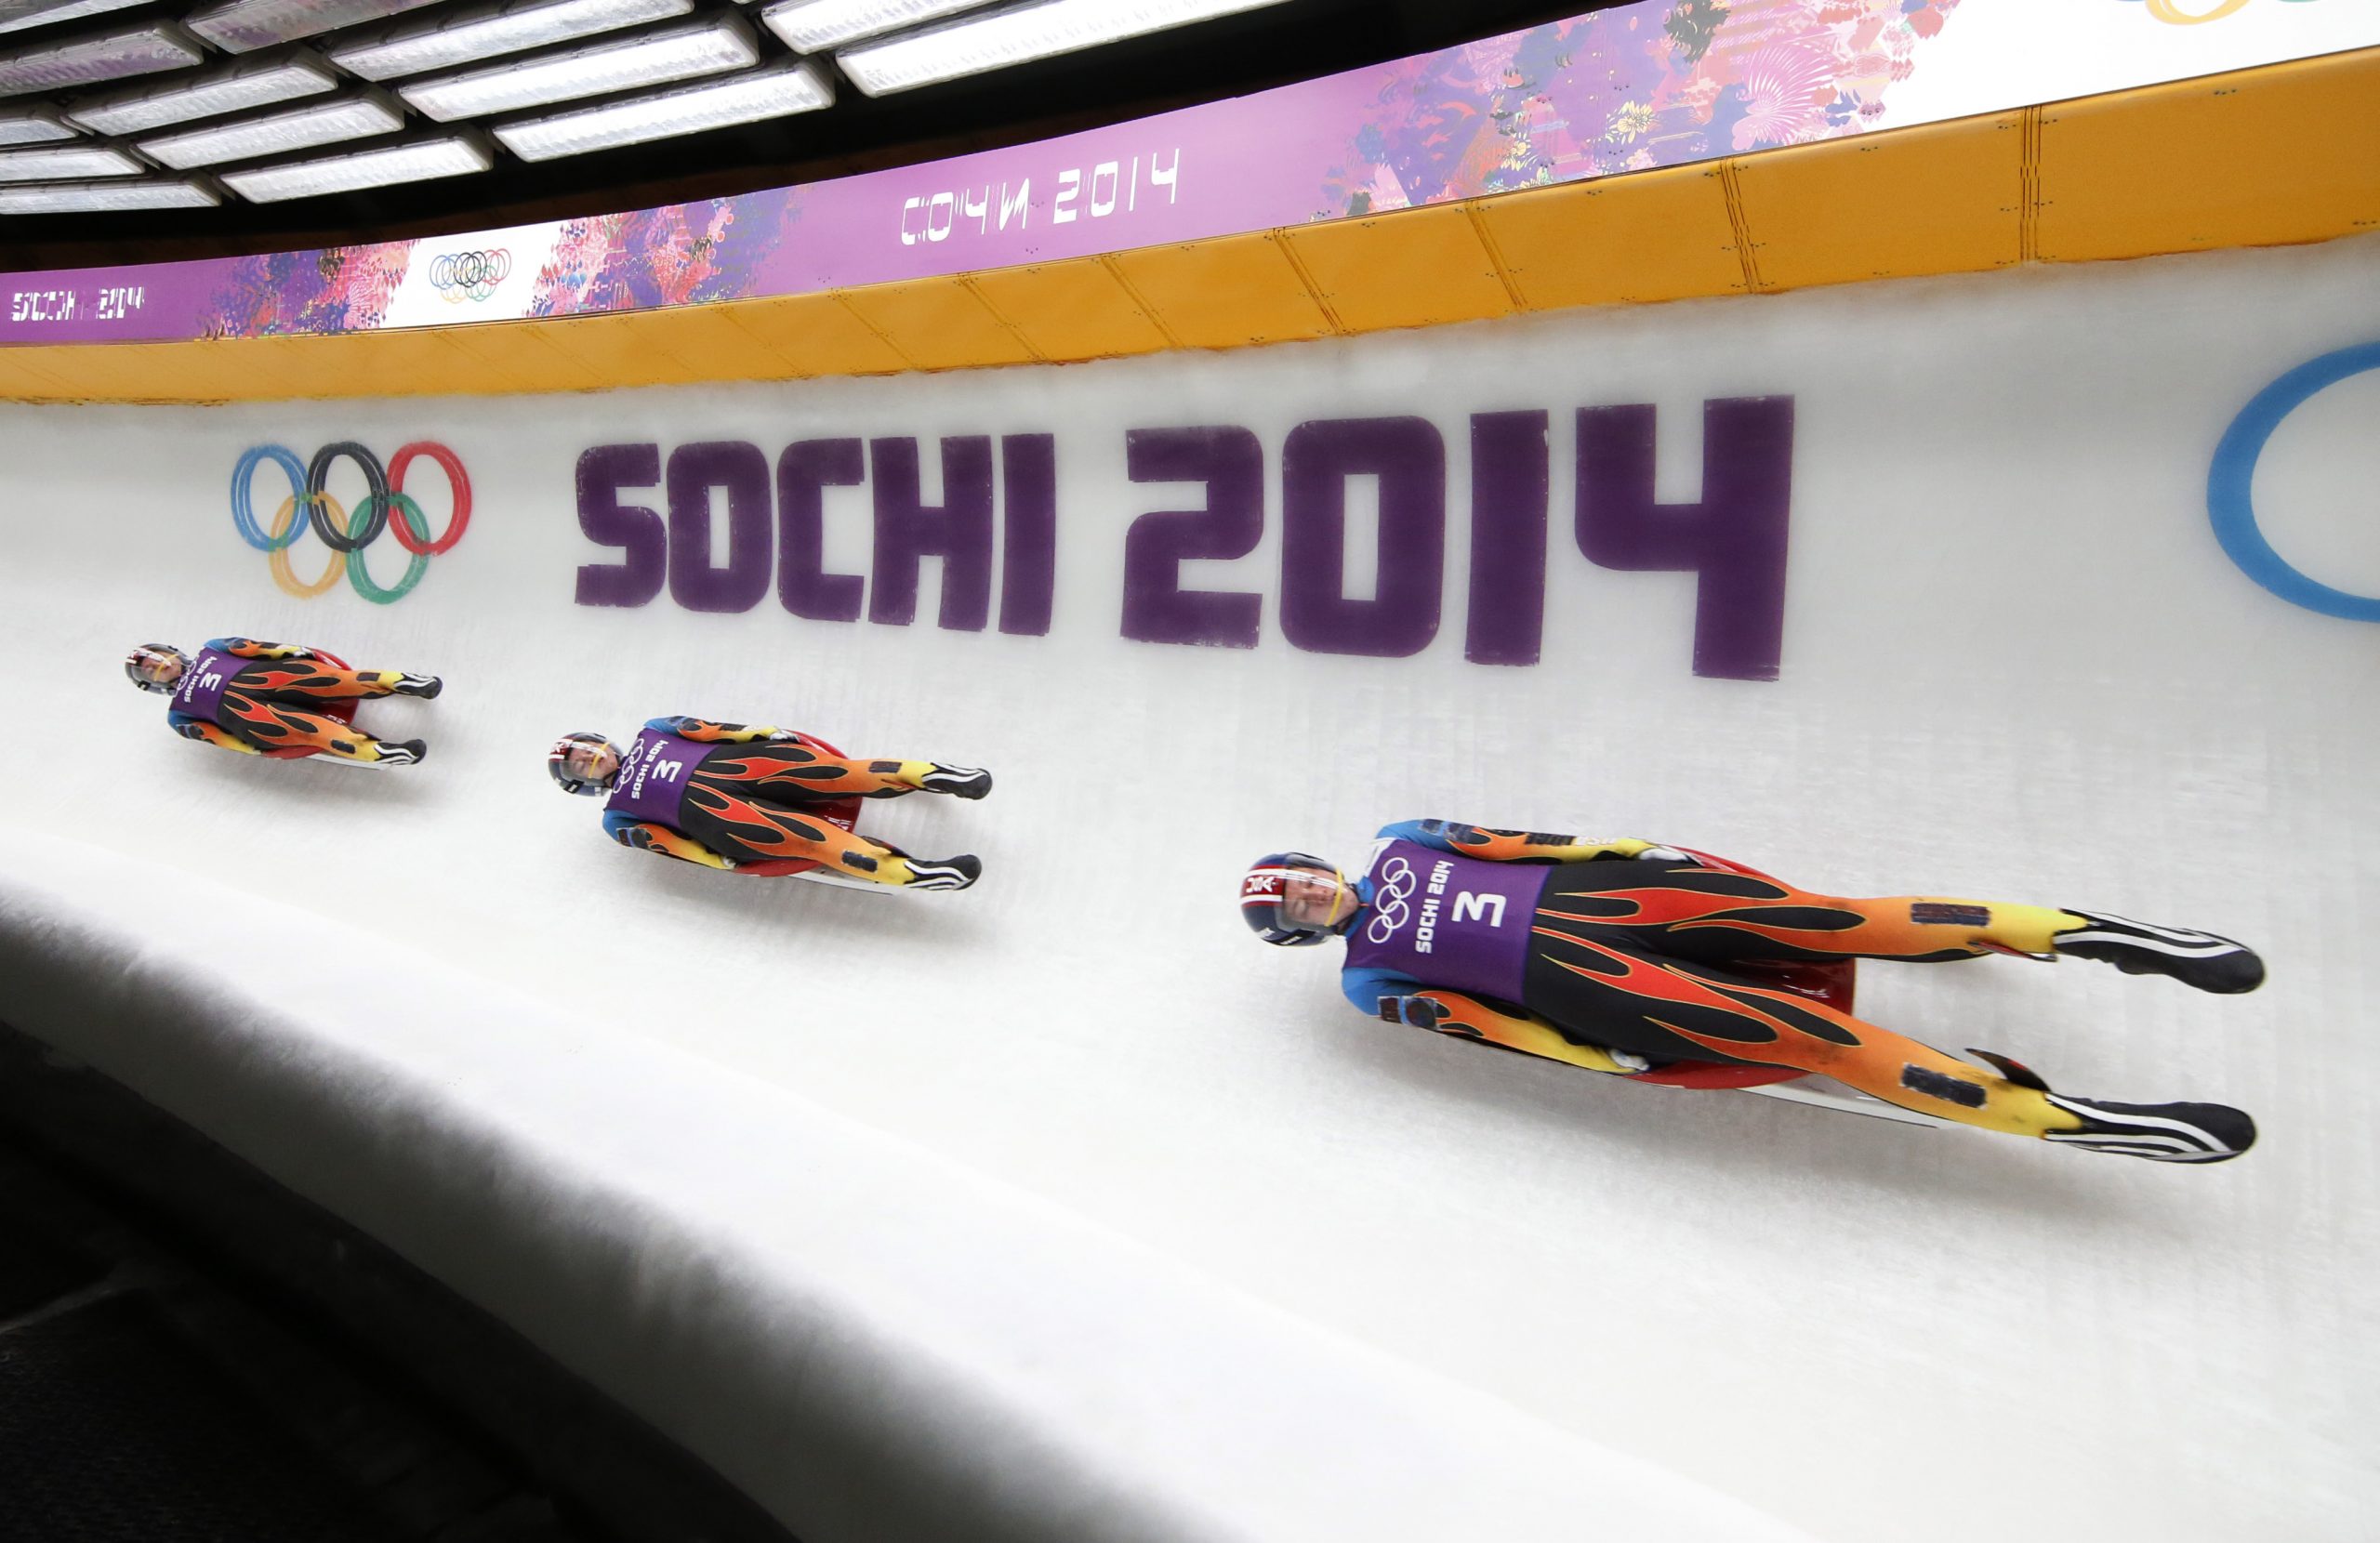 Sienta en video la adrenalina de ir abordo de un luge (trineo ligero) en Sochi